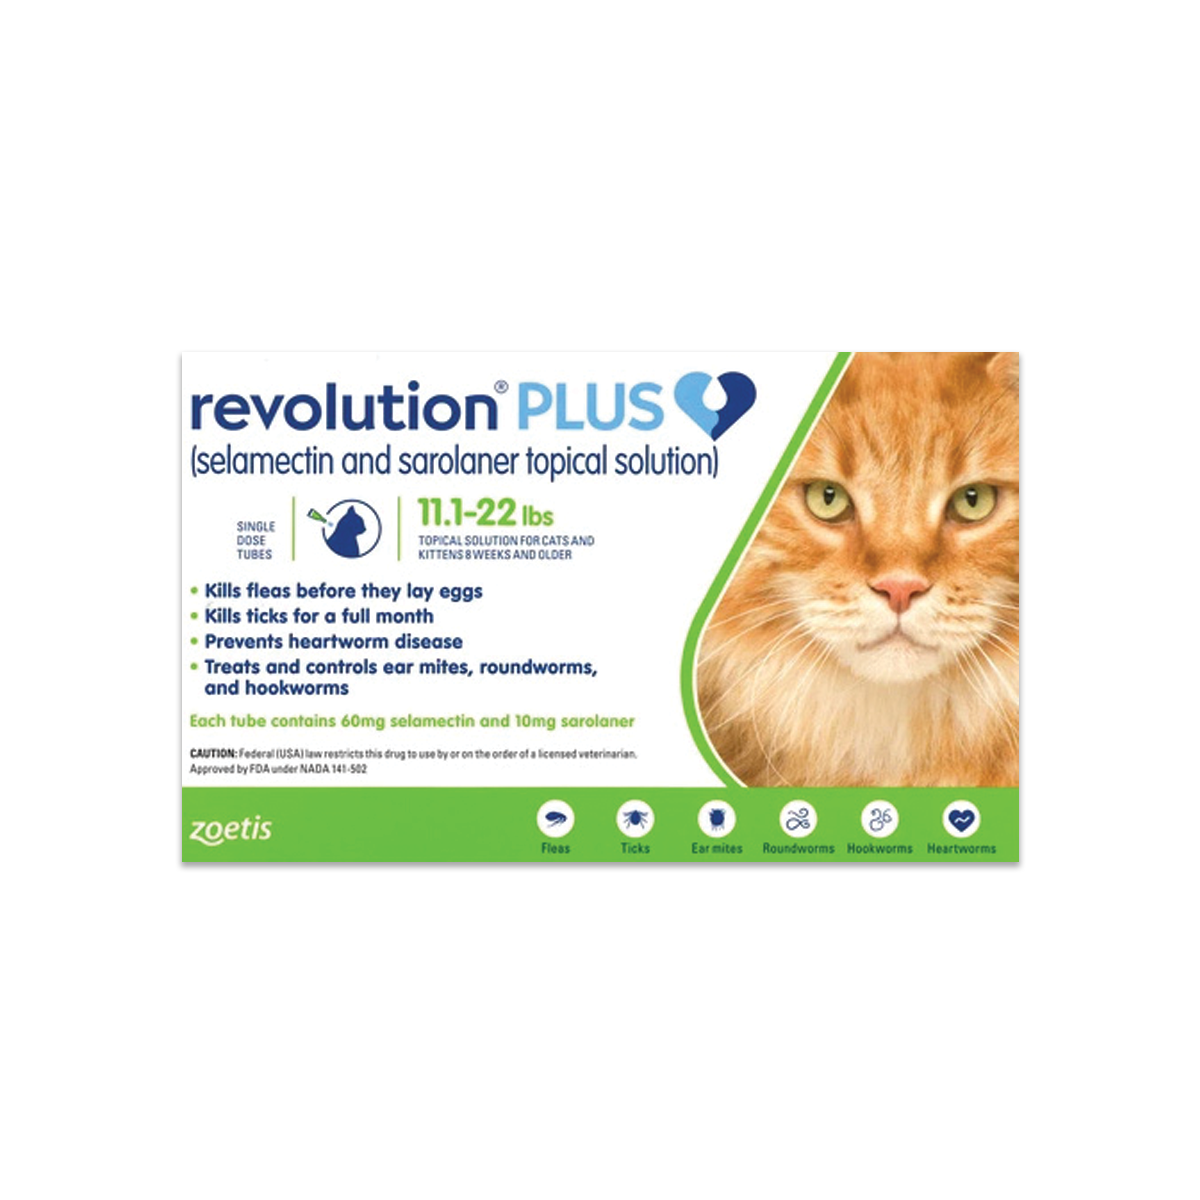 Revolution Plus for Cats เรโวลูชั่น พลัส ยาหยอดกำจัด เห็บ หมัดแมว น้ำหนัก 5.1-10.0 กิโลกรัม